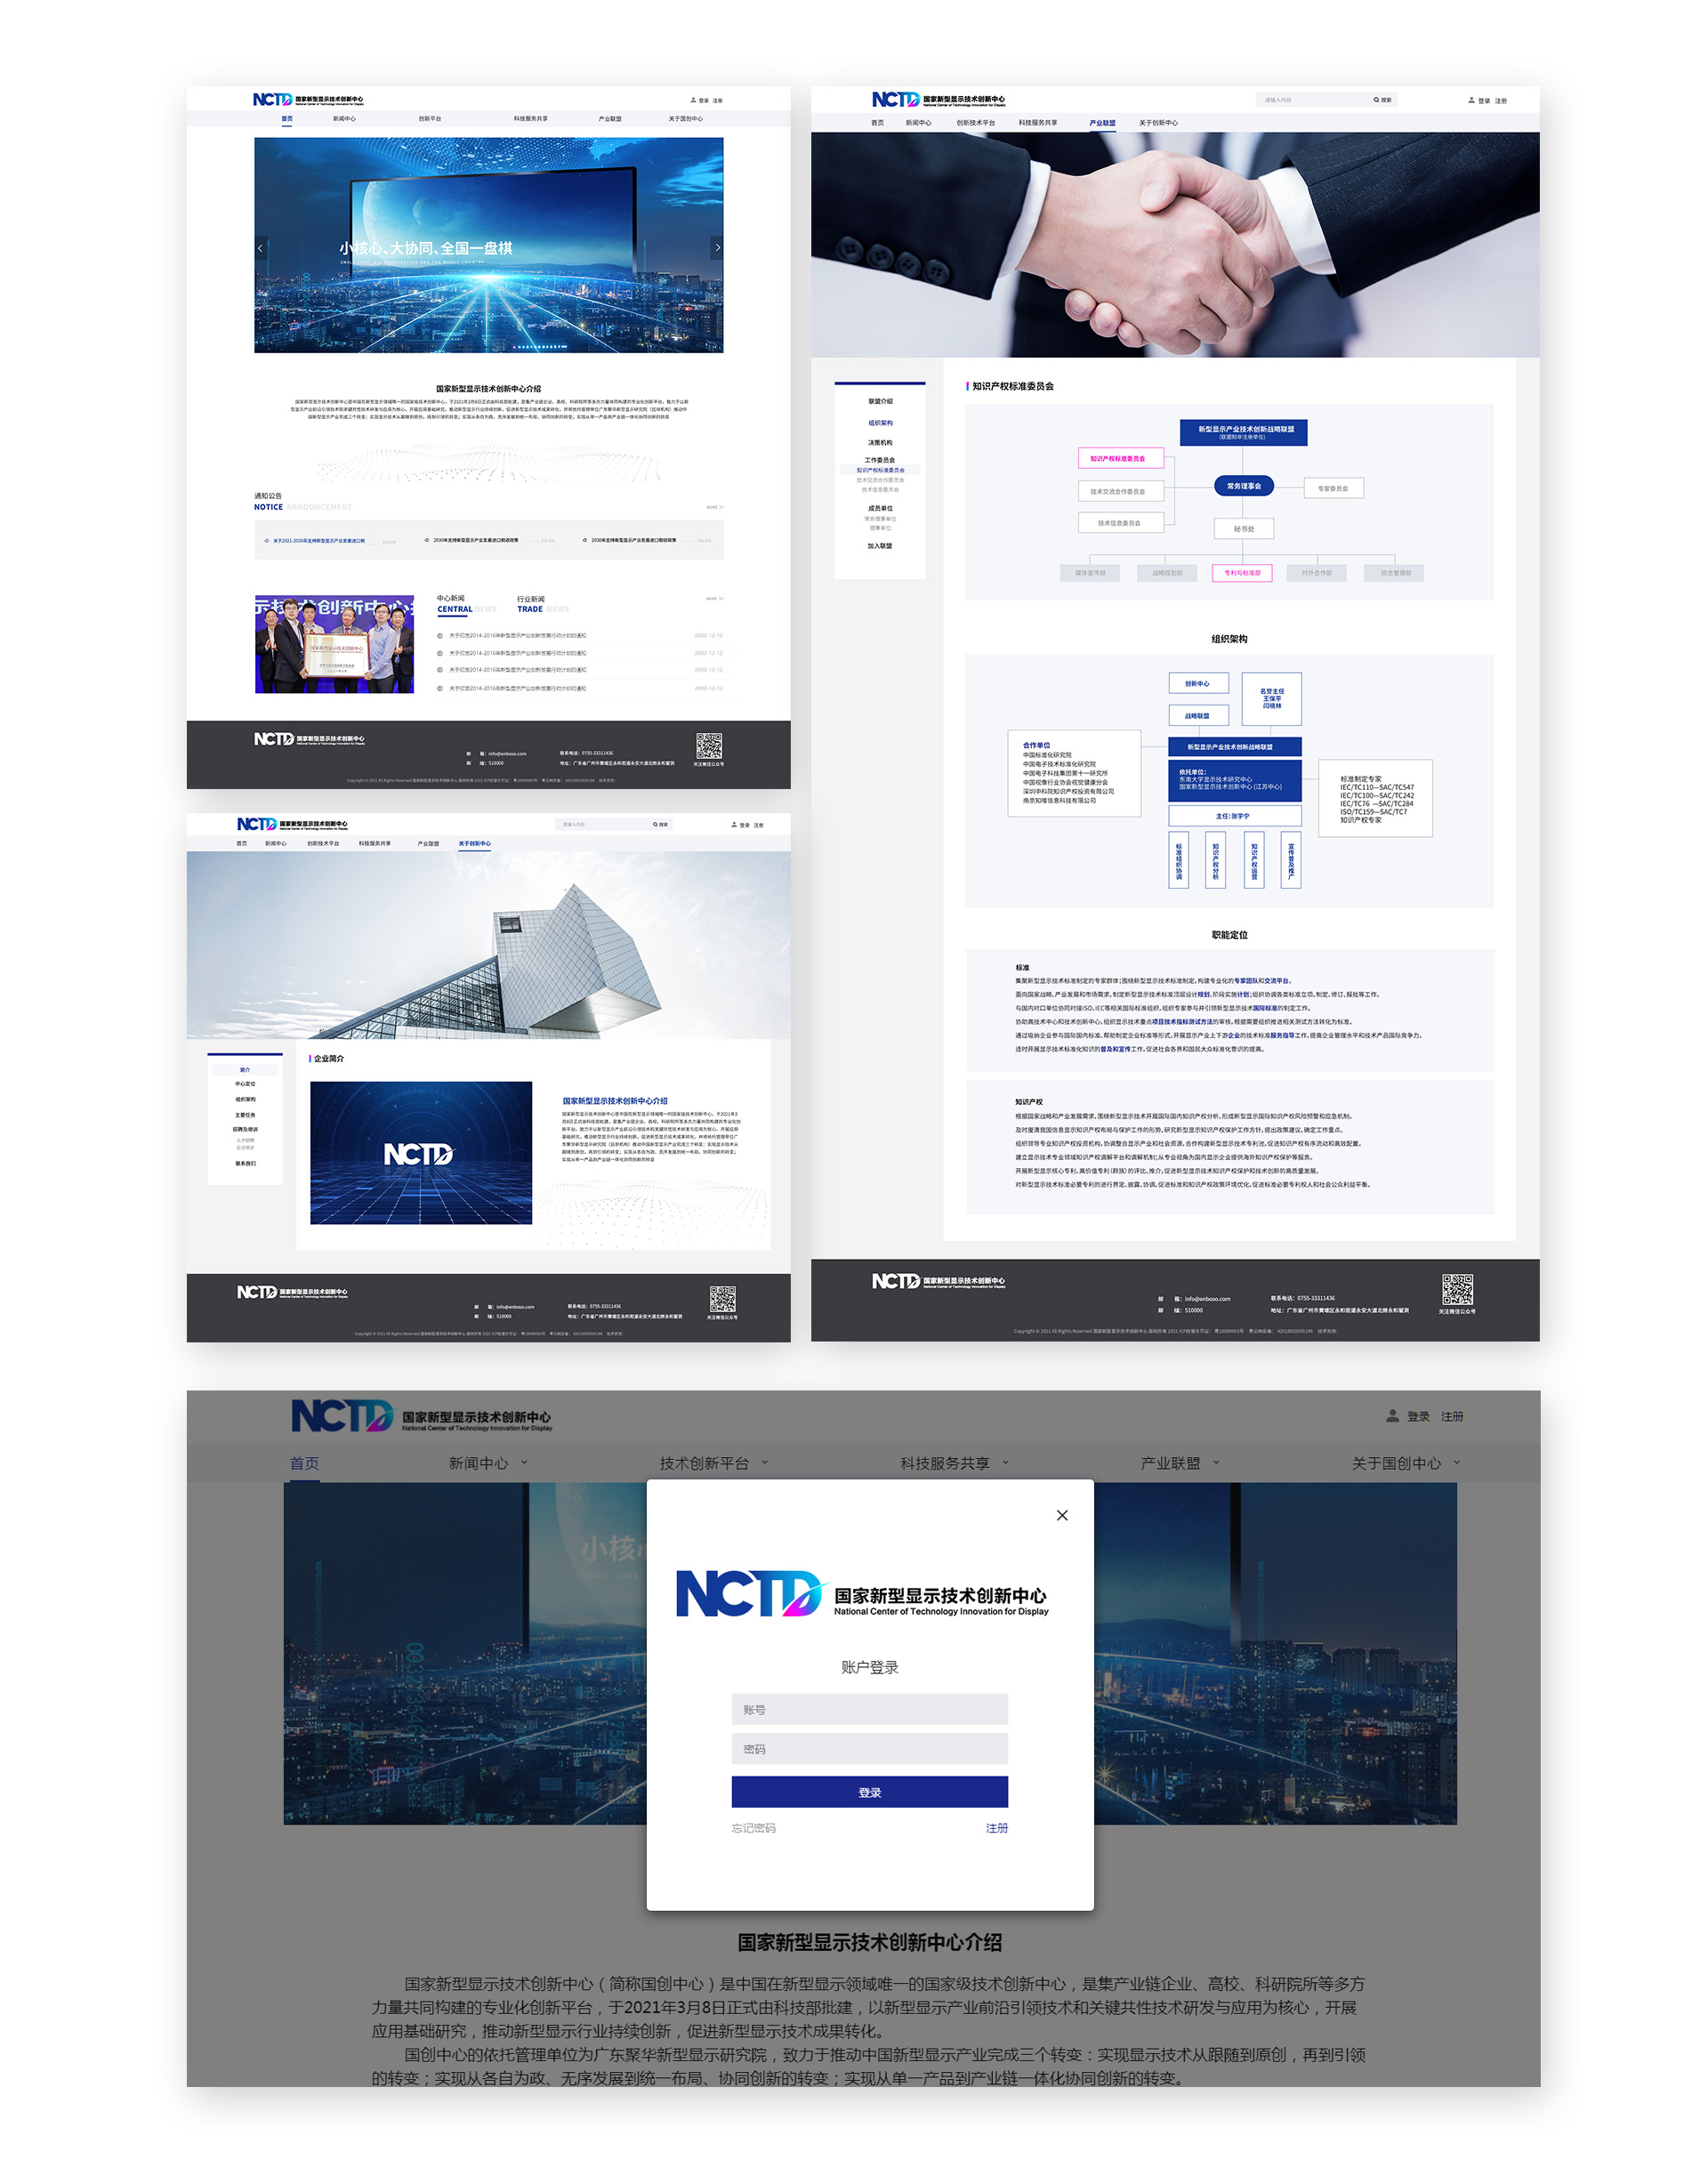 國家級網站平臺系統設計開發